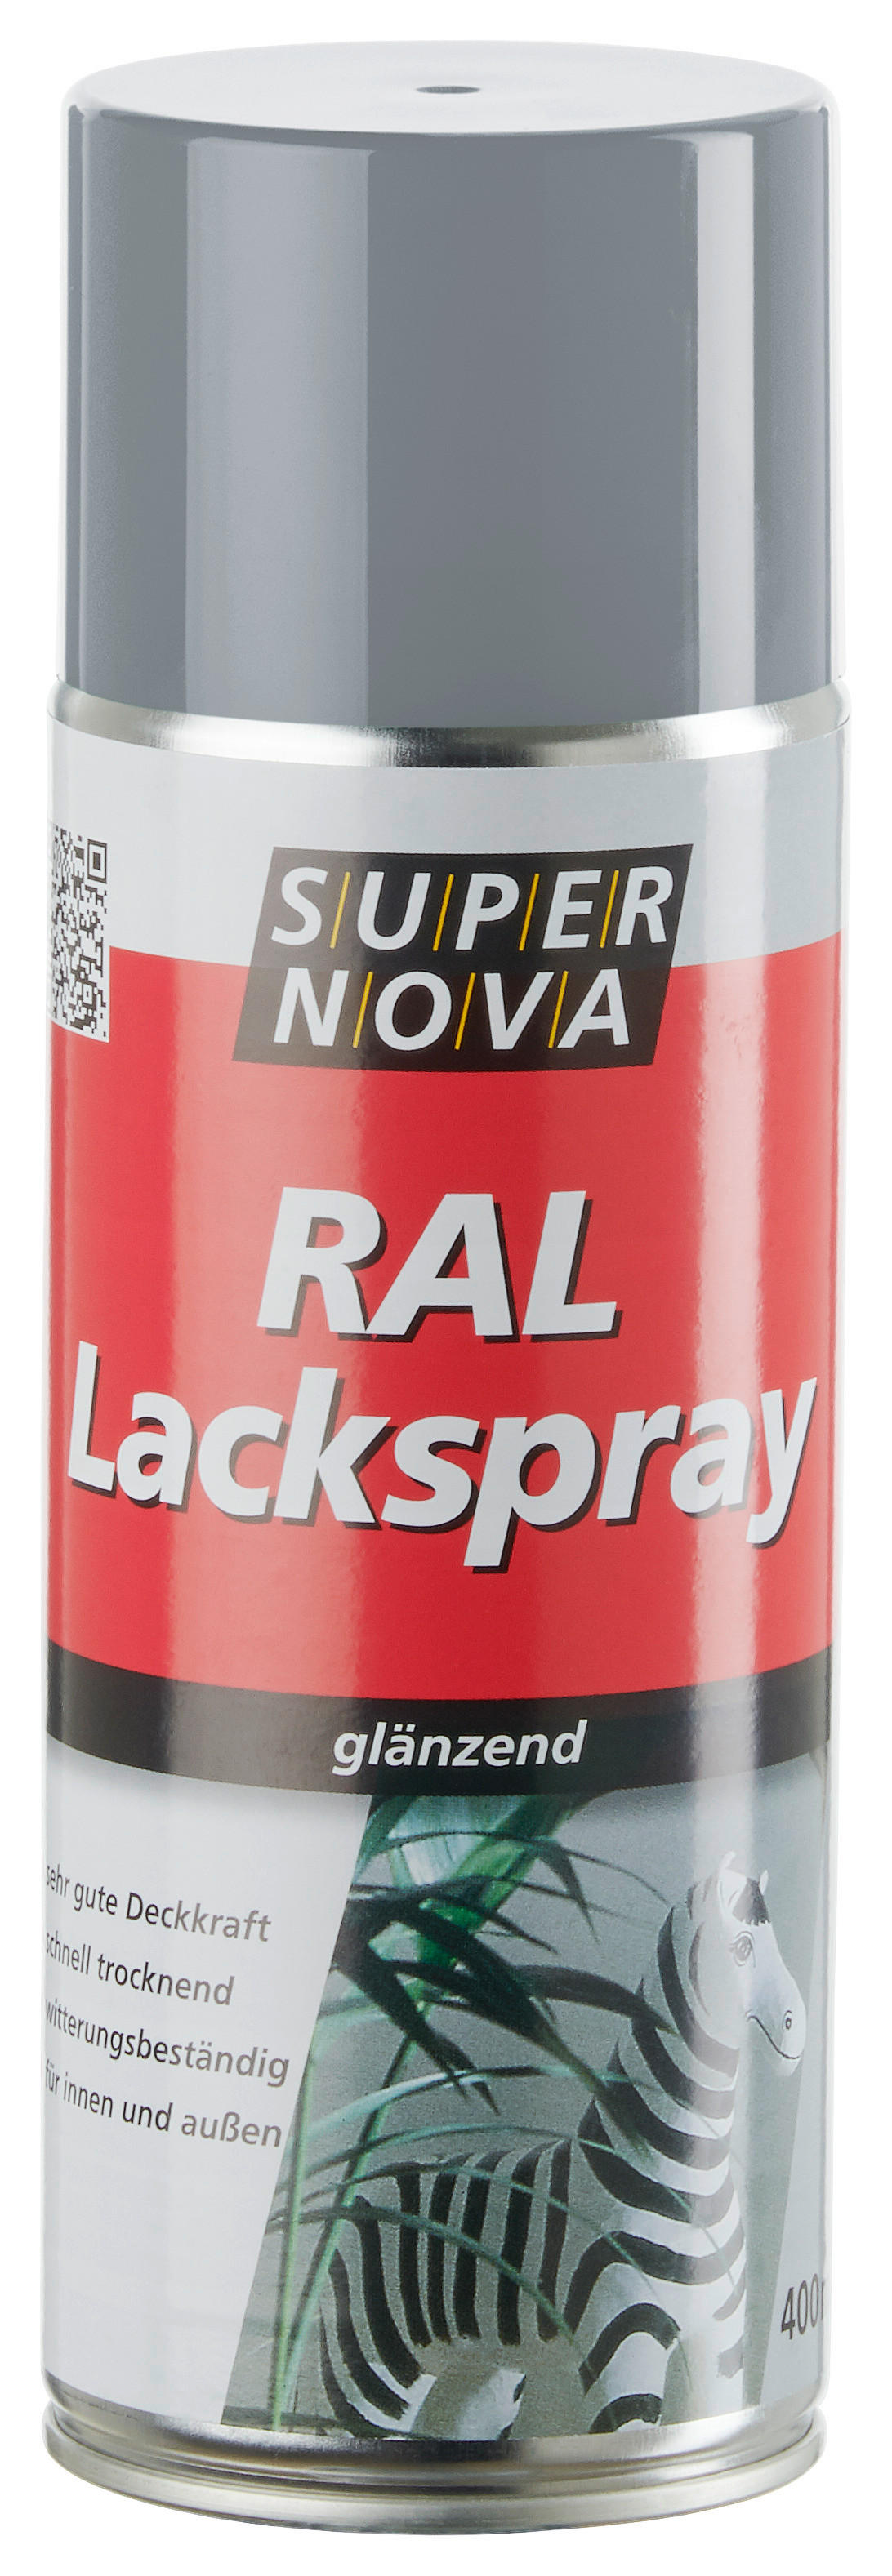 Super-Nova Lackspray Silbergrau glänzend ca. 0,4 l Lackspray 400ml - Silbergrau (400ml)